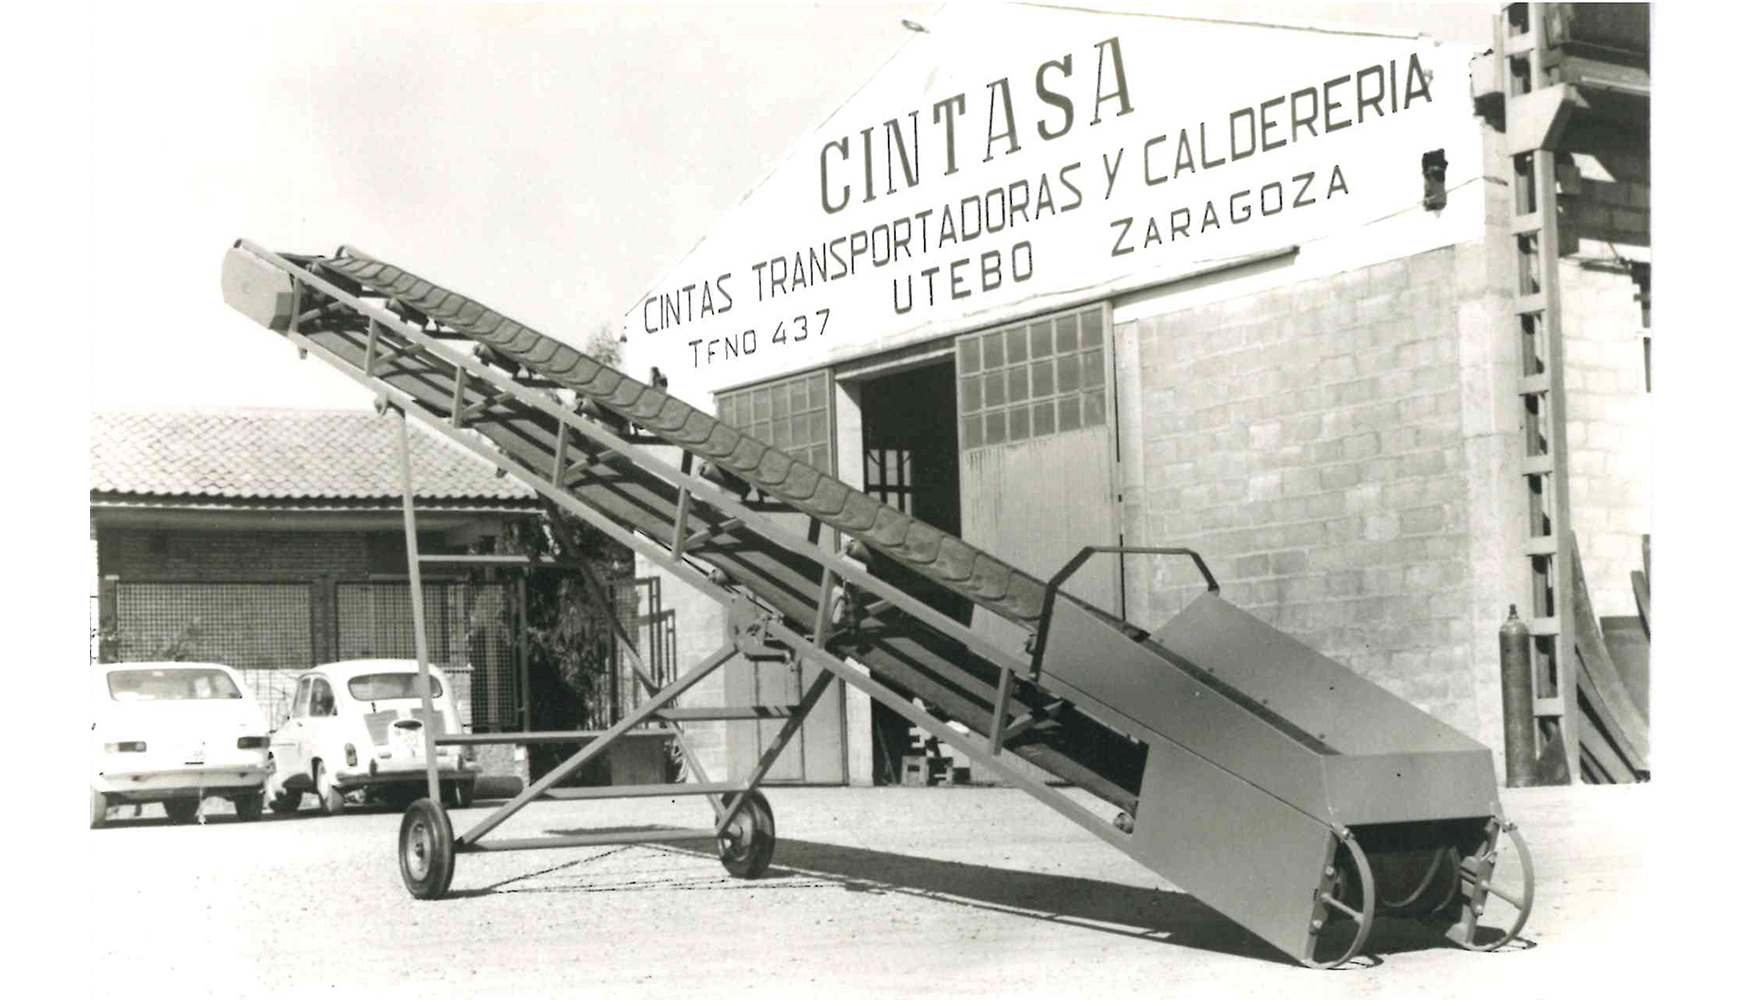 En una pequea nave en Utebo, Zaragoza, comenzaba Cintasa su actividad en 1973